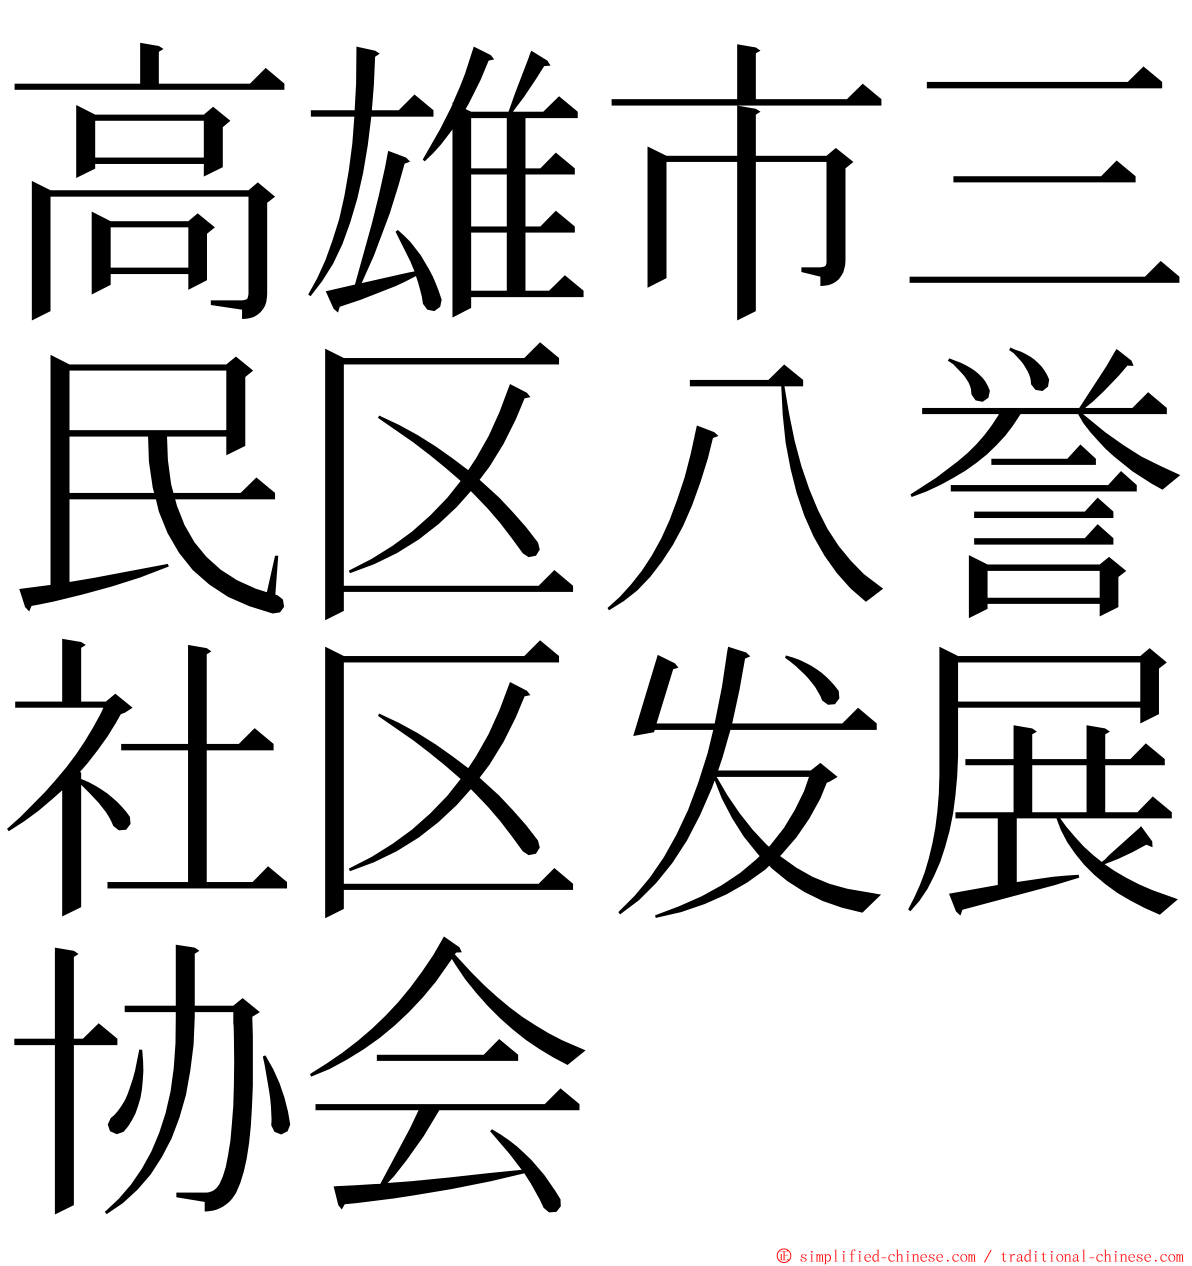 高雄市三民区八誉社区发展协会 ming font